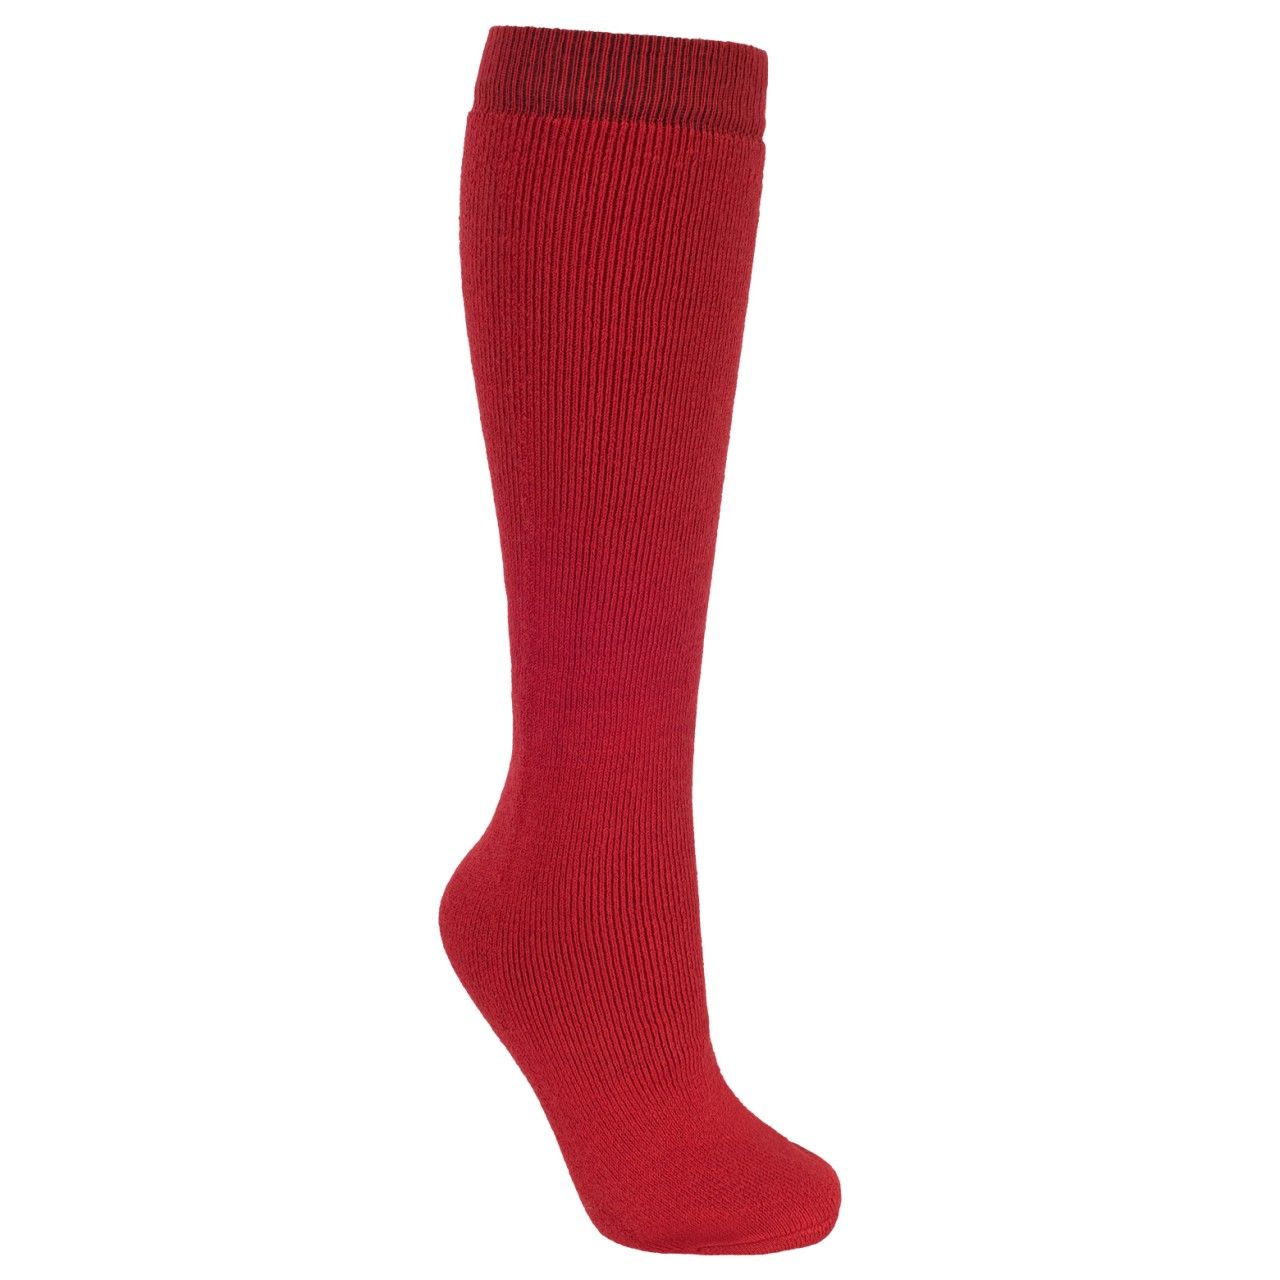 Ski Tube Sock. Warm Ski Sock. Soft and Comfortable. 45% Wool 45% Acrylic 10% Polyamide.